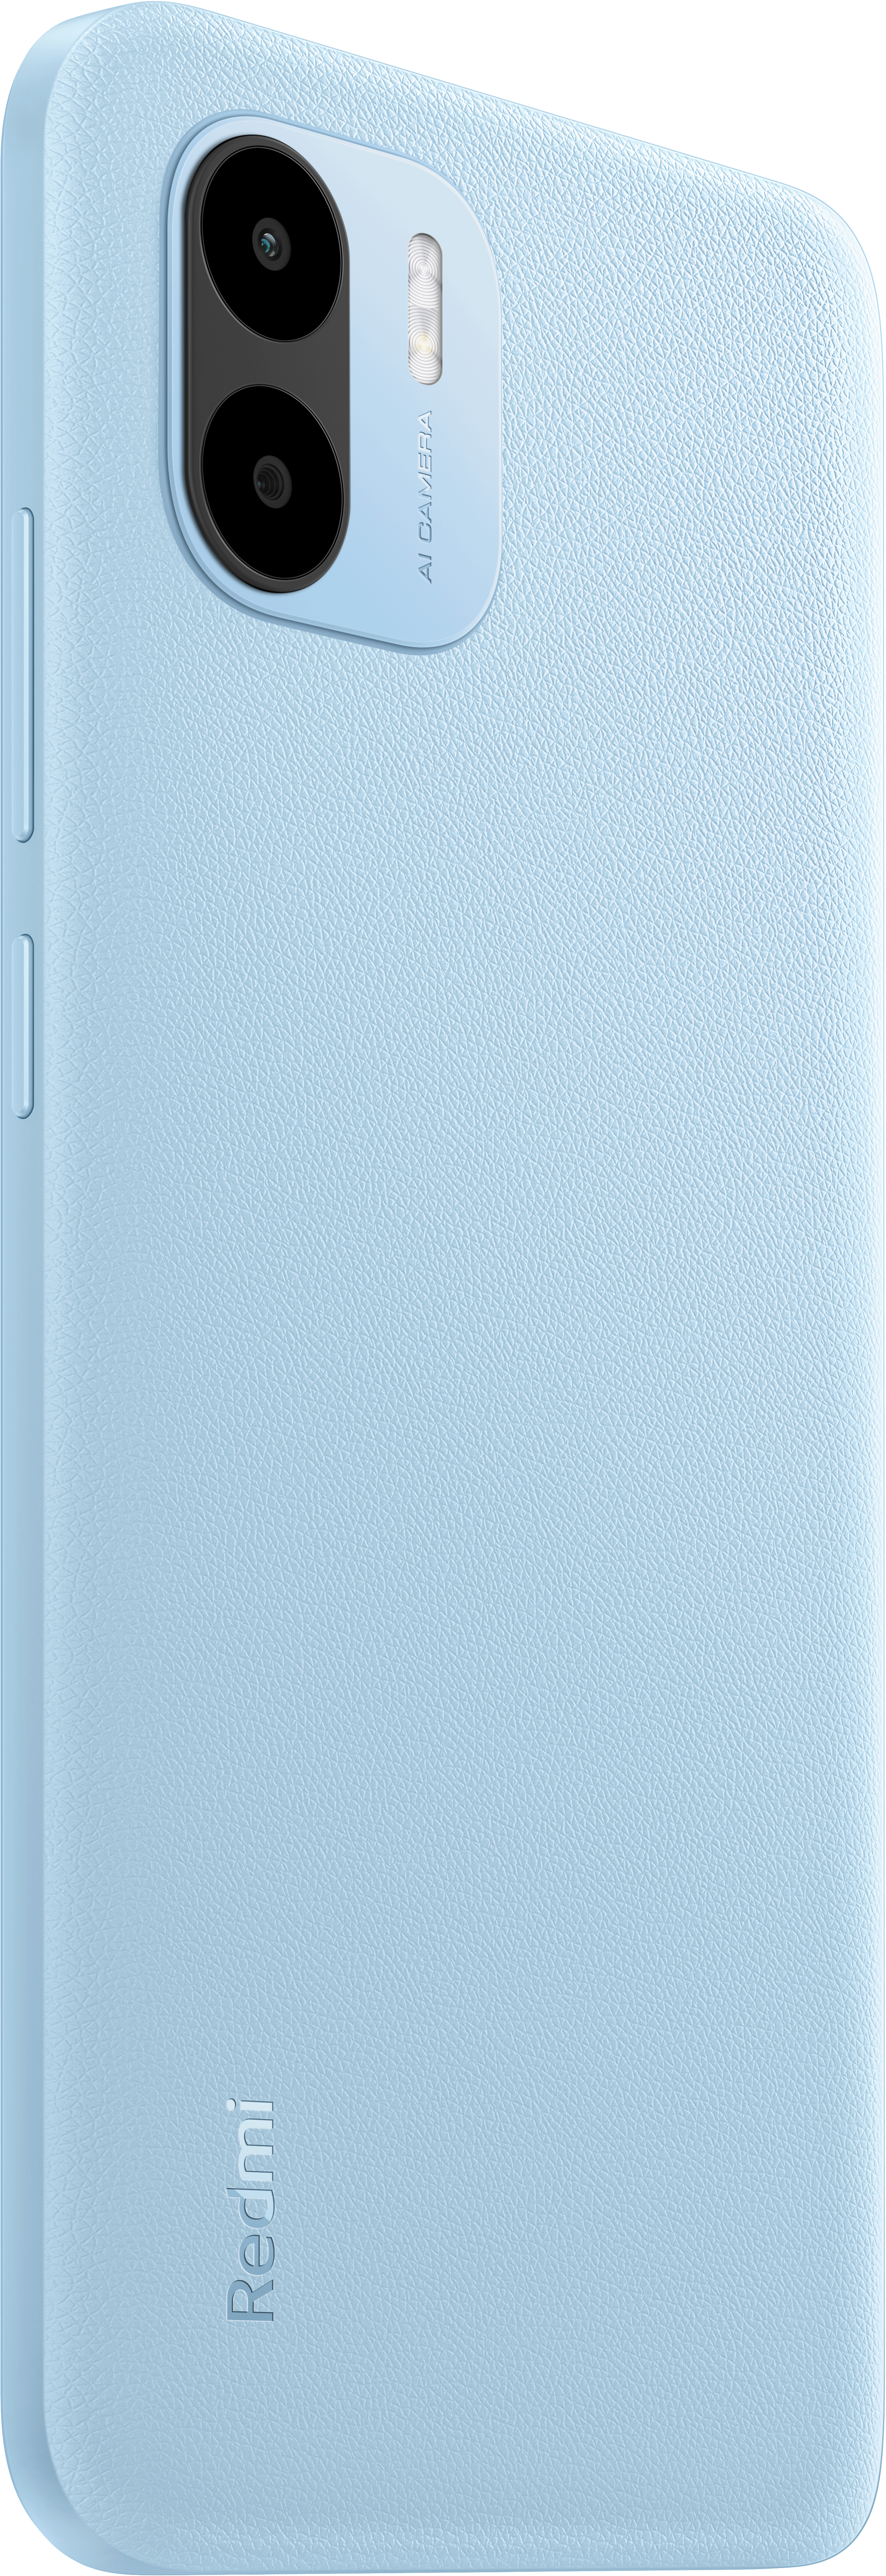 XIAOMI Redmi A2 Dual SIM Light 32 Blue GB